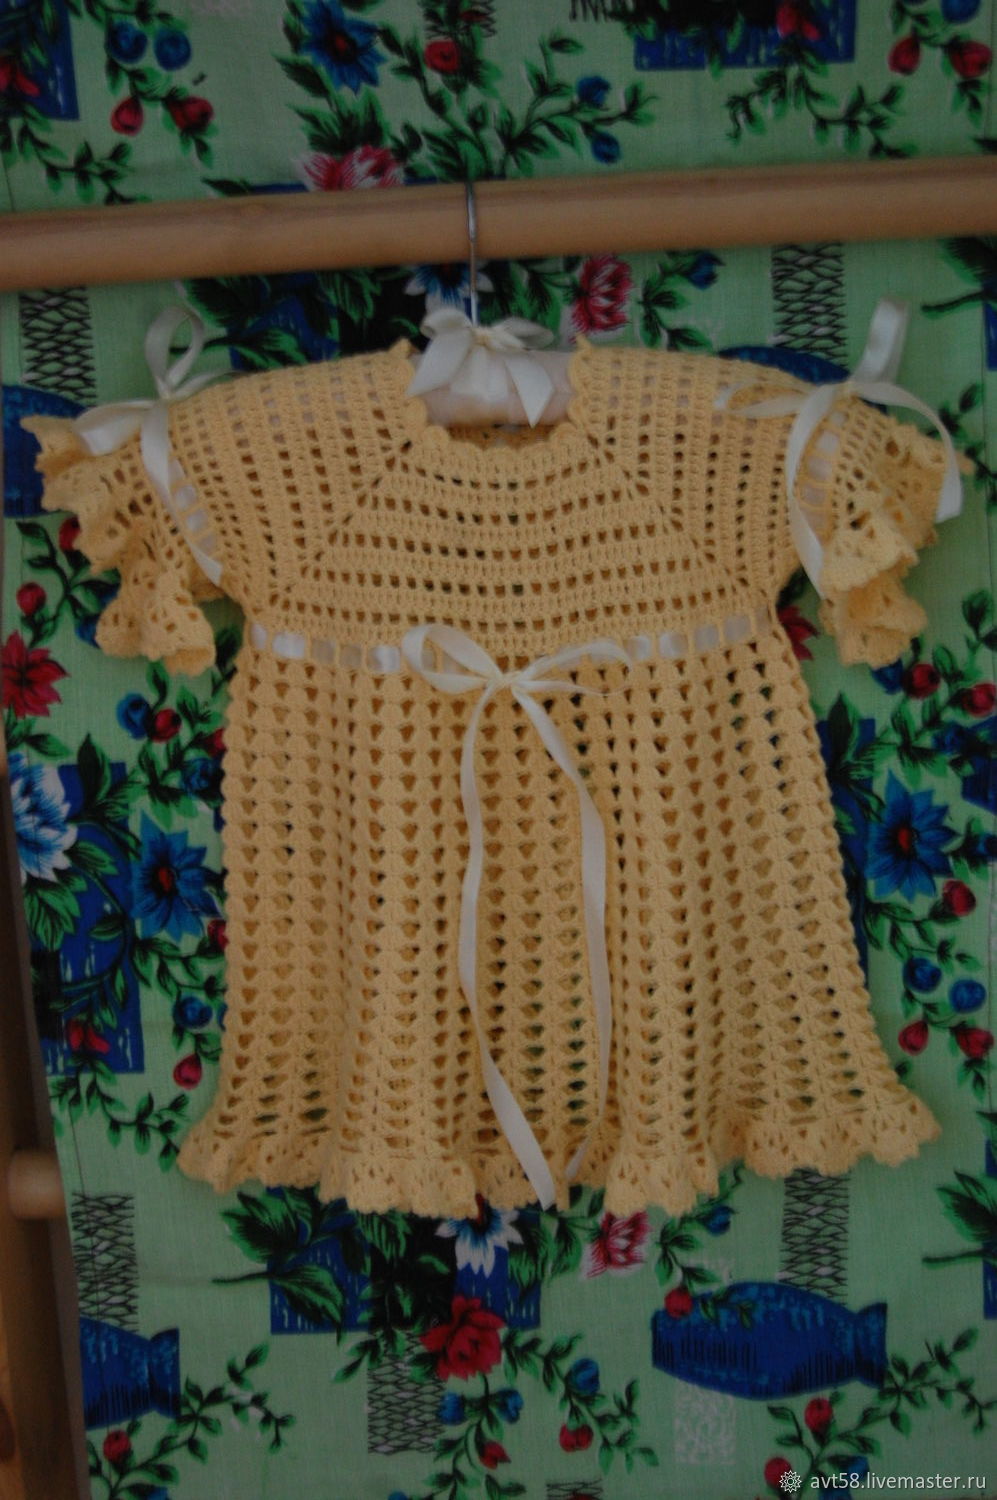 Вязаное крючком платье "Лето" из хлопка